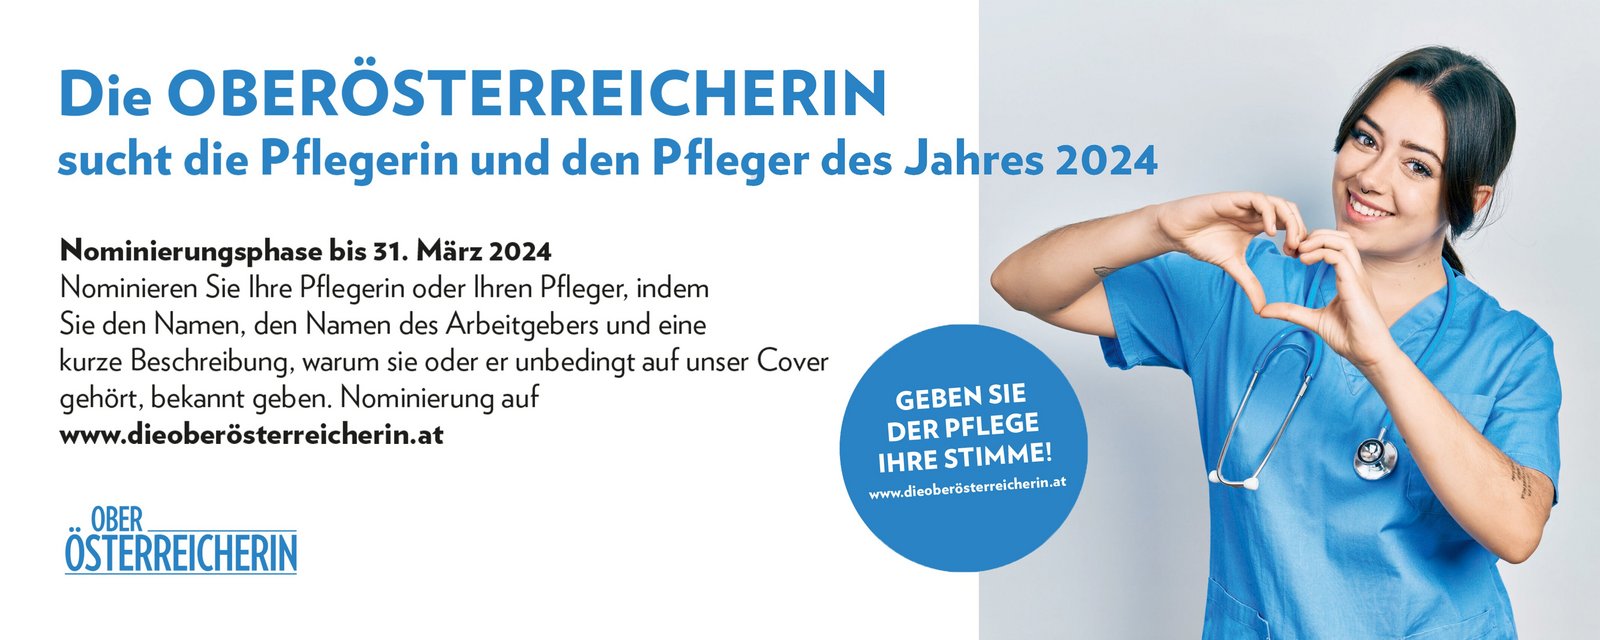 Pflegerin formt mit den Händen ein Herz. Die Oberösterreicherin sucht die Pflegerin und den Pfleger des Jahres 2024. Geben Sie der Pflege Ihre Stimme!